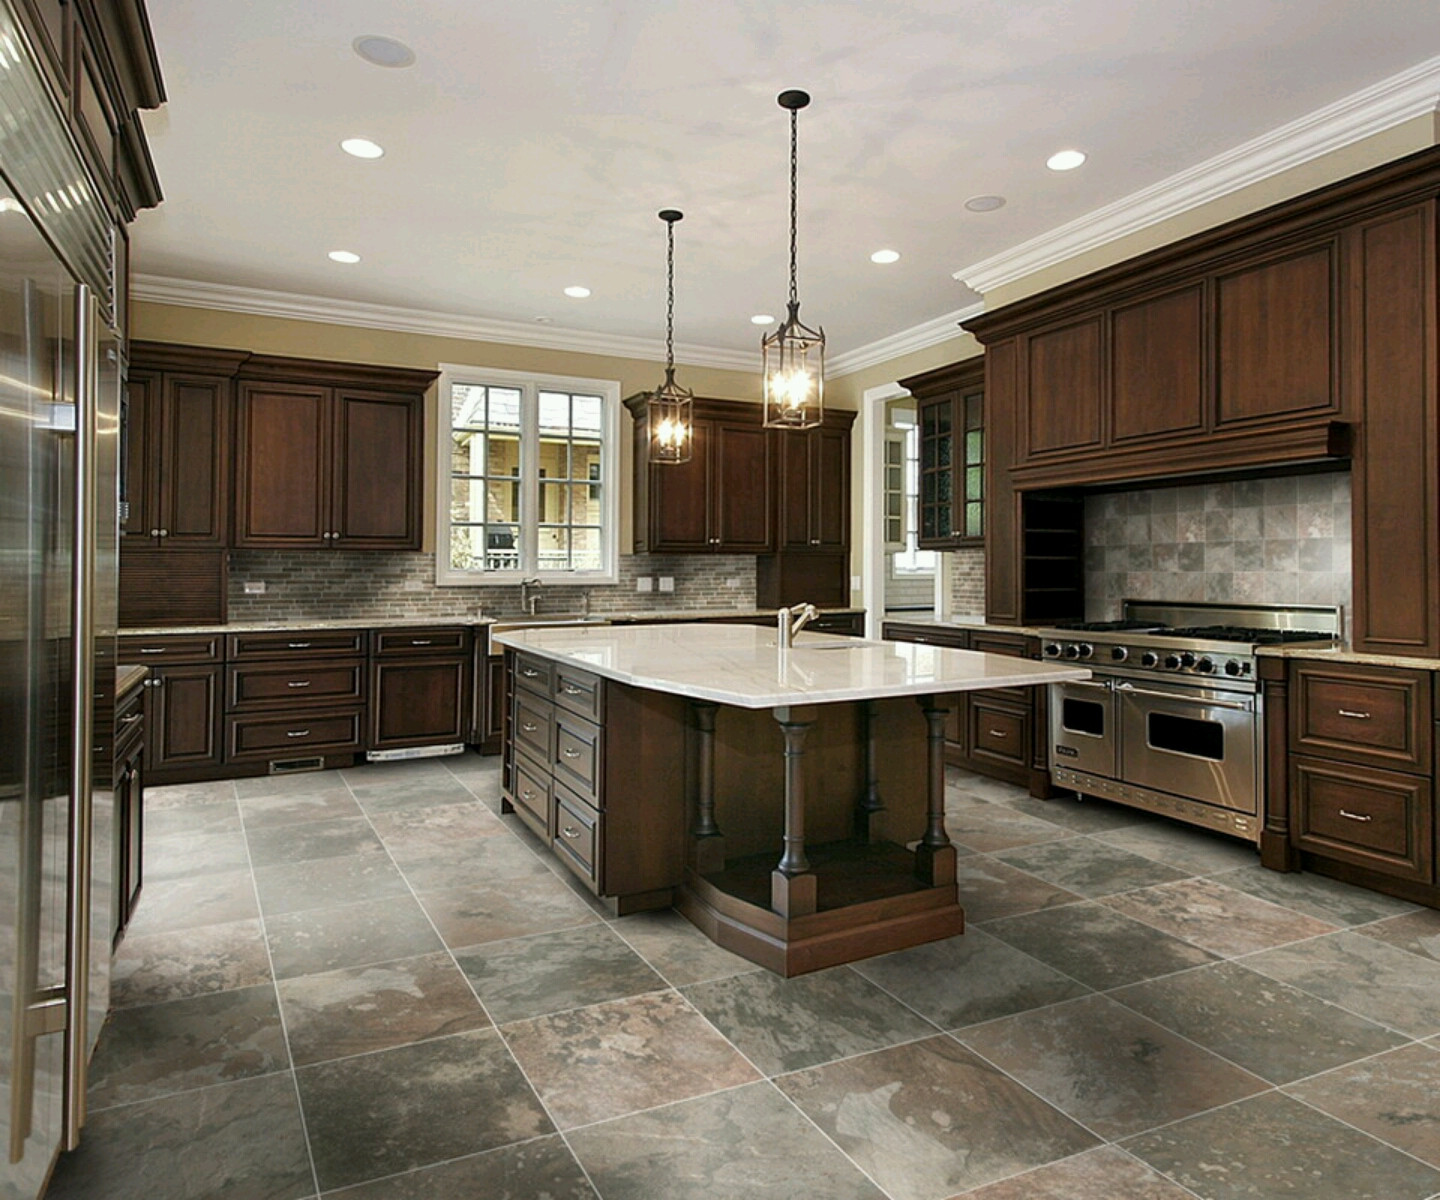 Kitchen Tile Floor Ideas
 New home designs latest Modern kitchen designs ideas